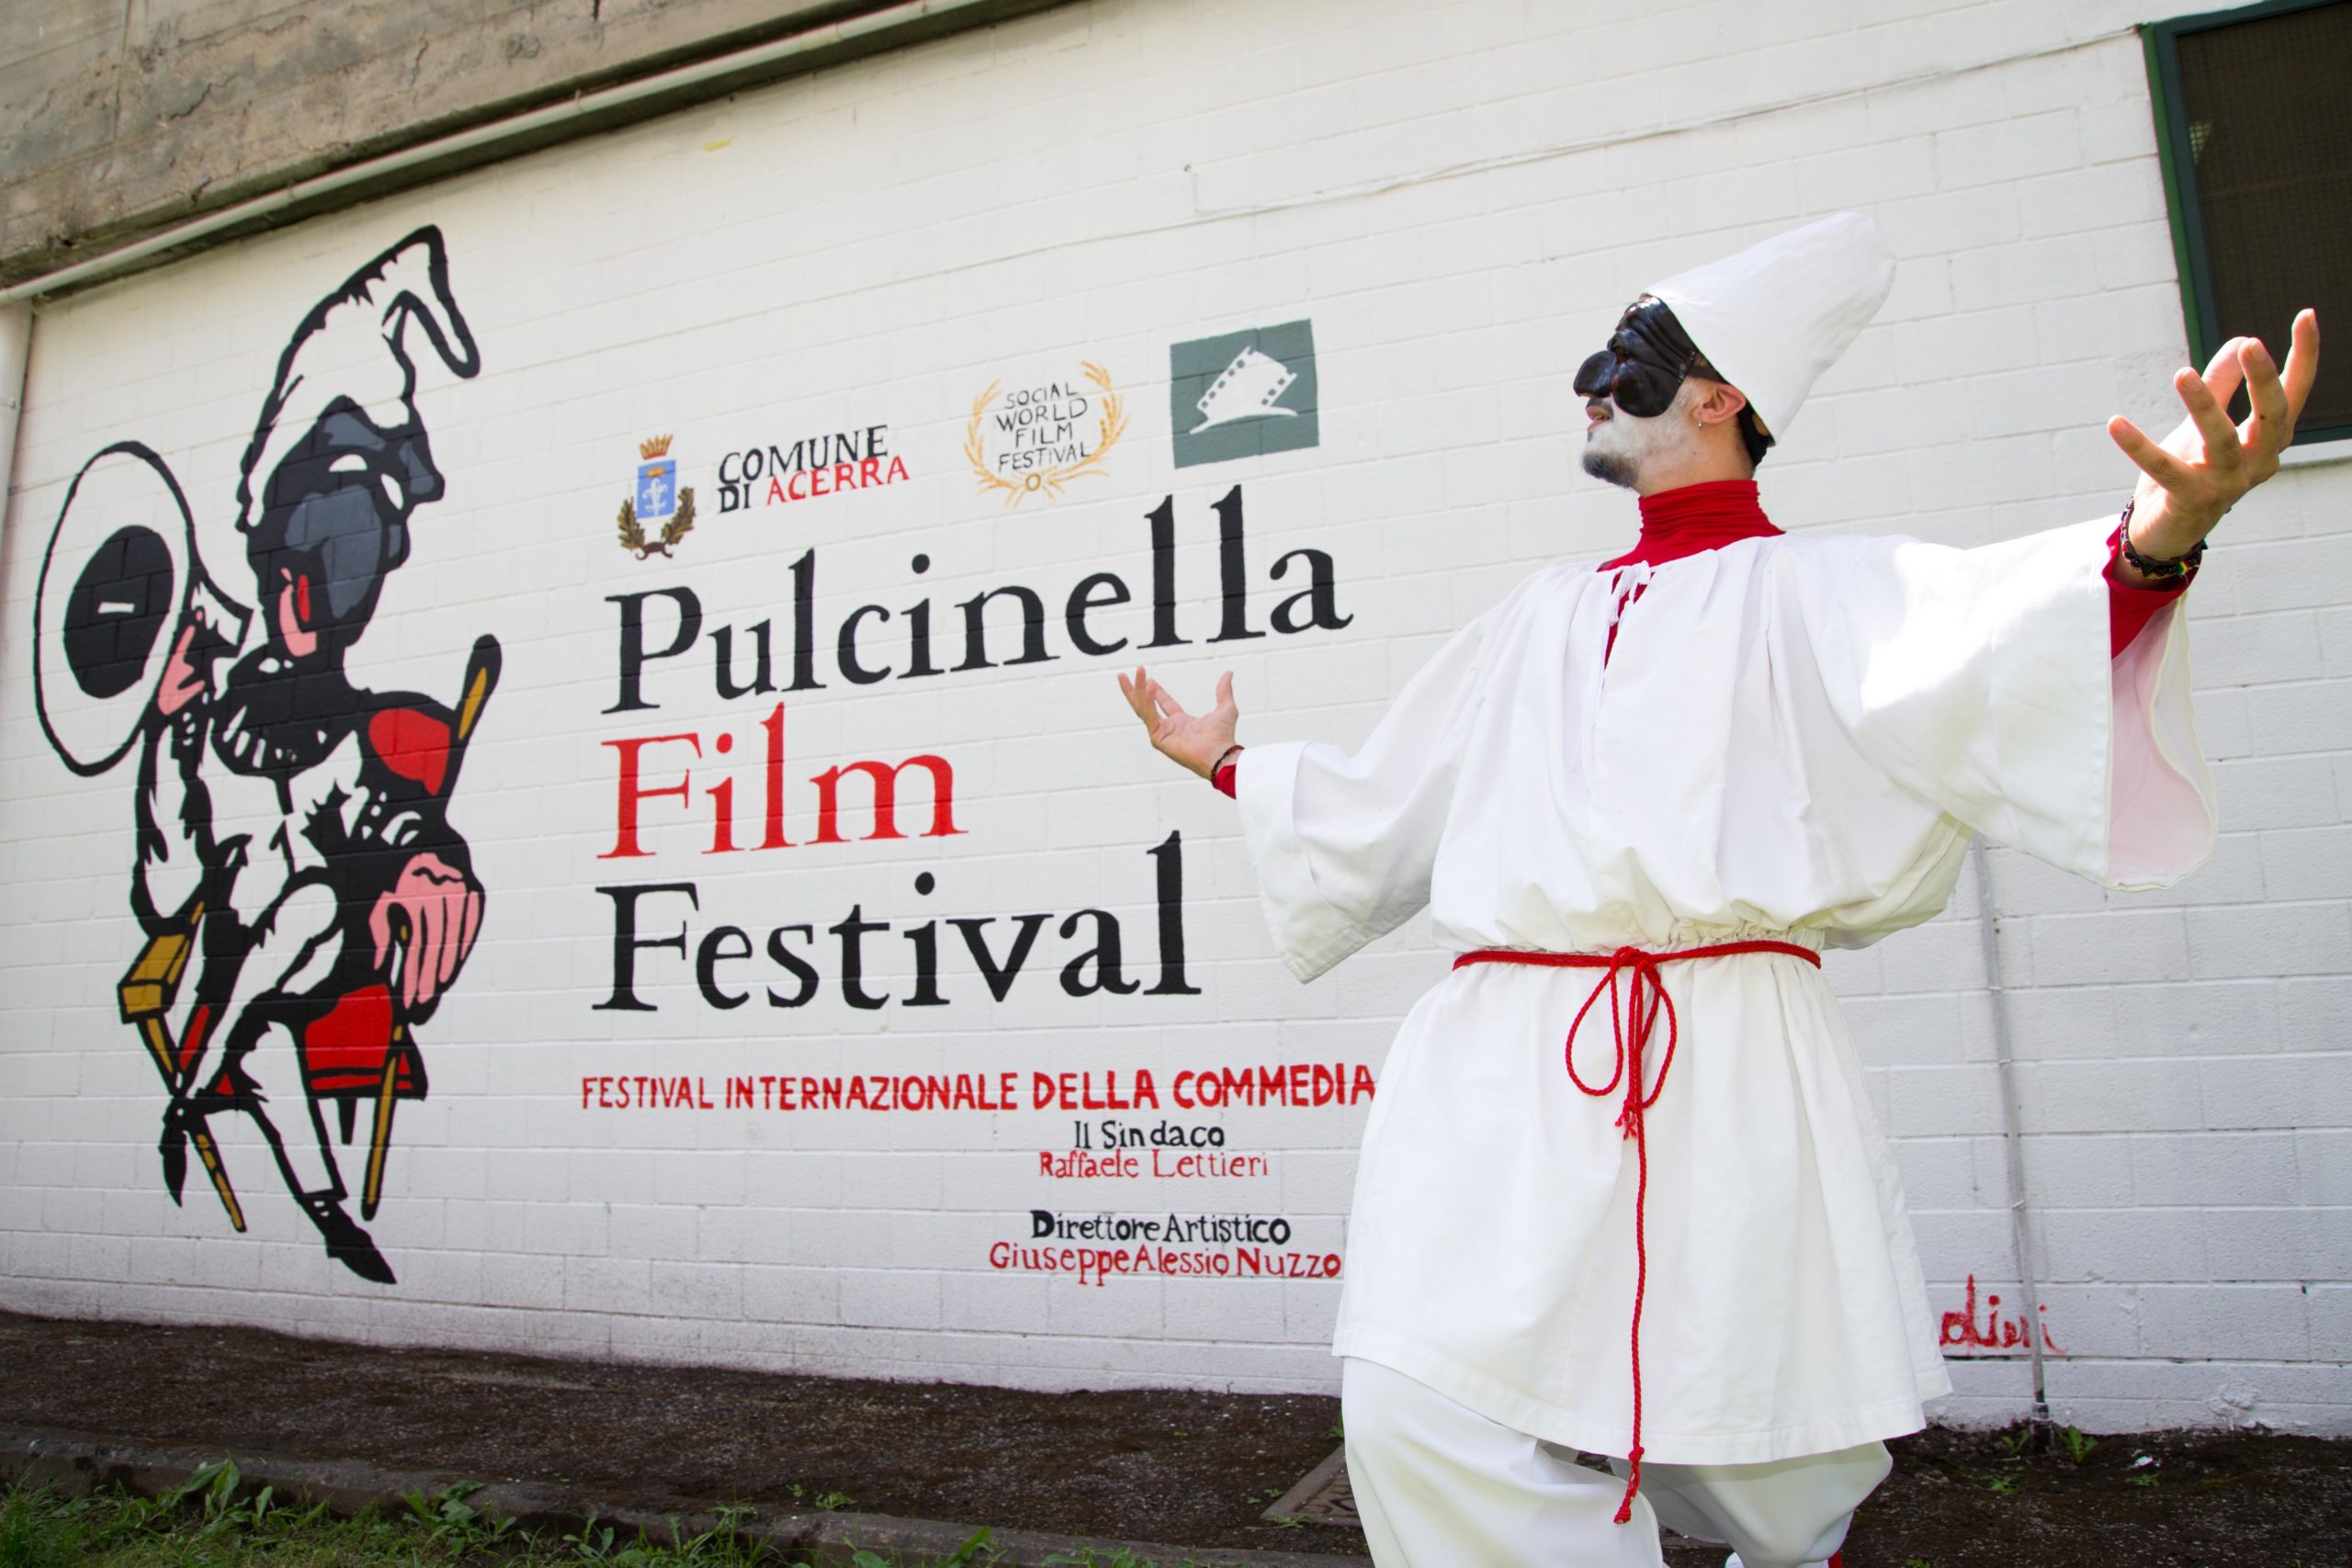 Pulcinella Film Festival, i premiati della 4a edizione 1